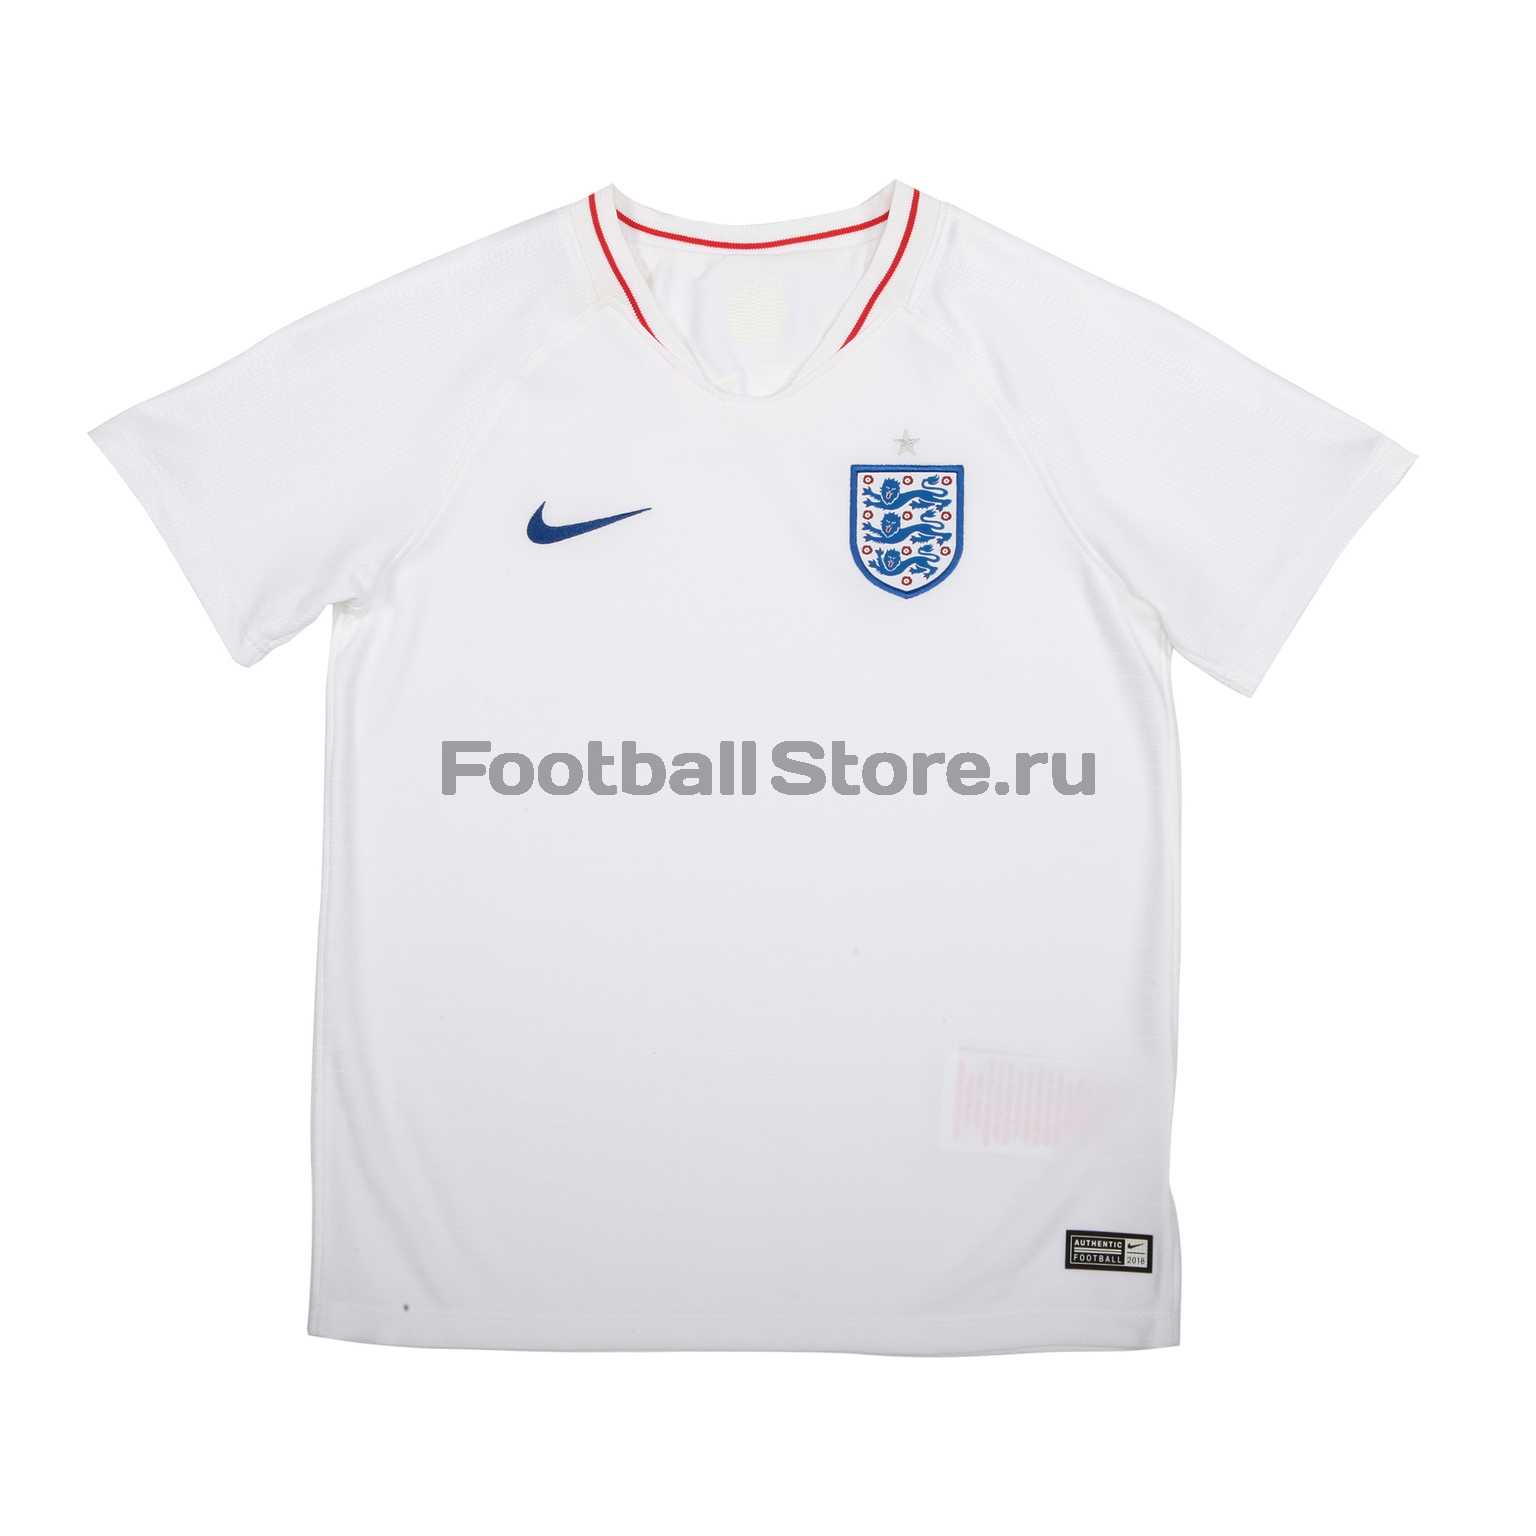 Комплект детской формы Nike сборной Англии (England) 894041-100